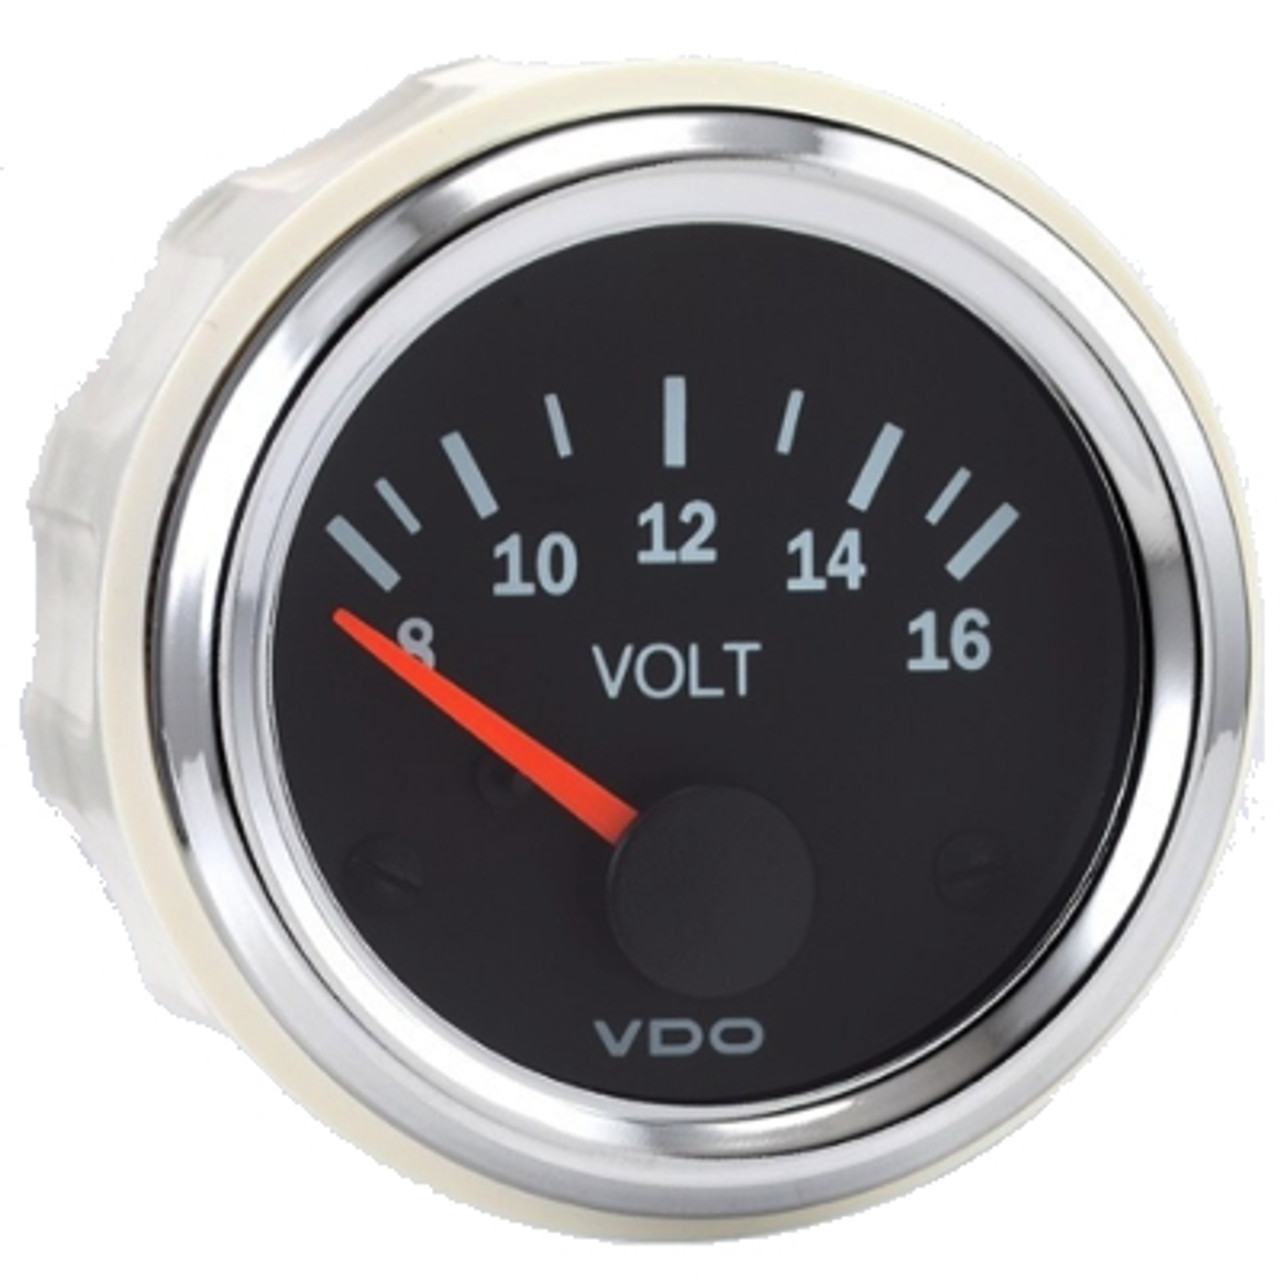 VDO Vision Chrome 16 Voltmeter 12V - Bulk Pkg - 332-193B